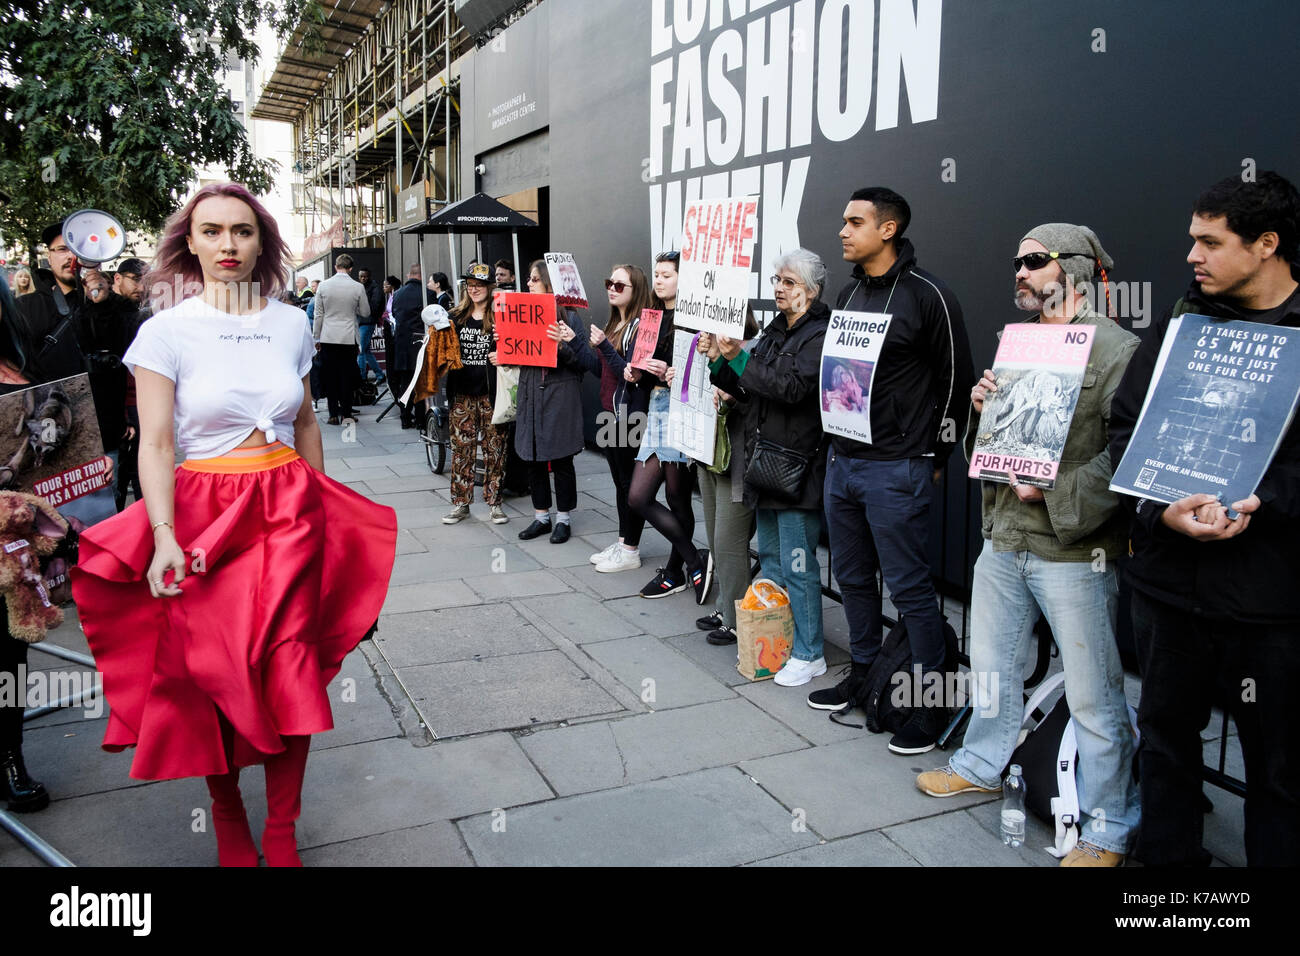 Londra, Regno Unito. 15 settembre 2017 gli attivisti per i diritti degli animali protestano fuori dalla sede della London Fashion Week per l'uso della pelliccia animale nell'industria della moda. Foto Stock